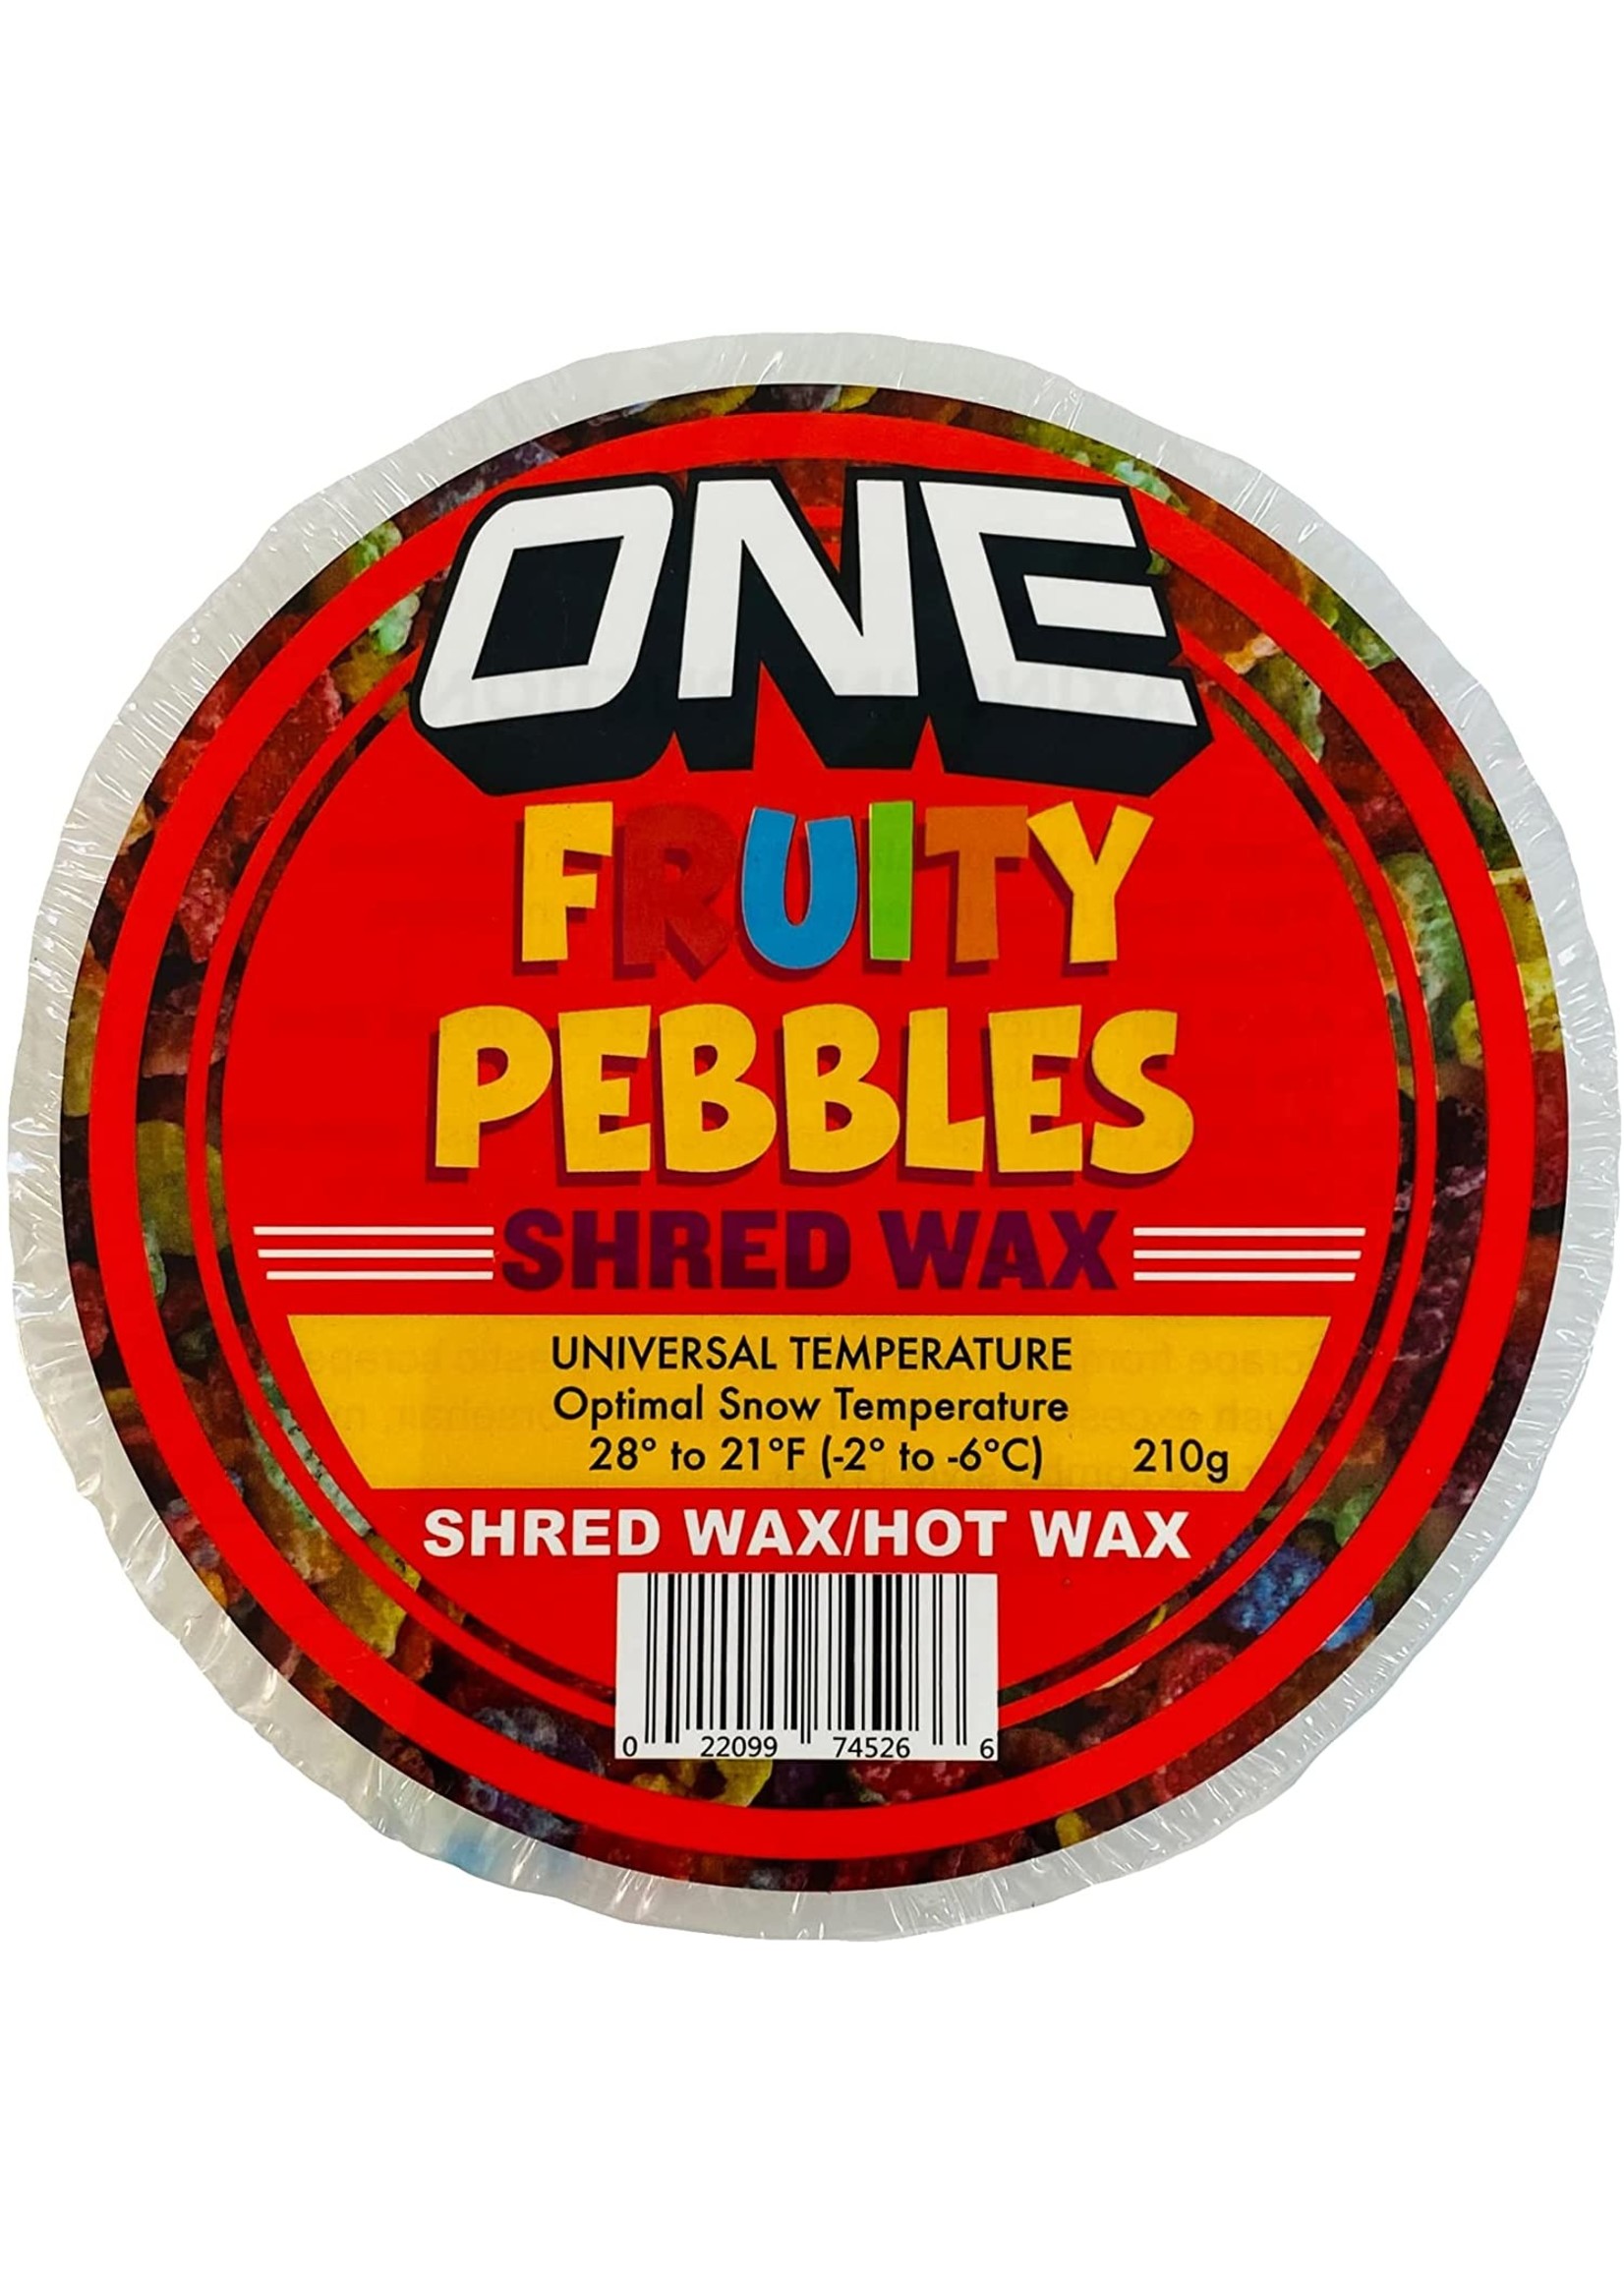 OneBall Jay Fruity Pebbles Shred Wax